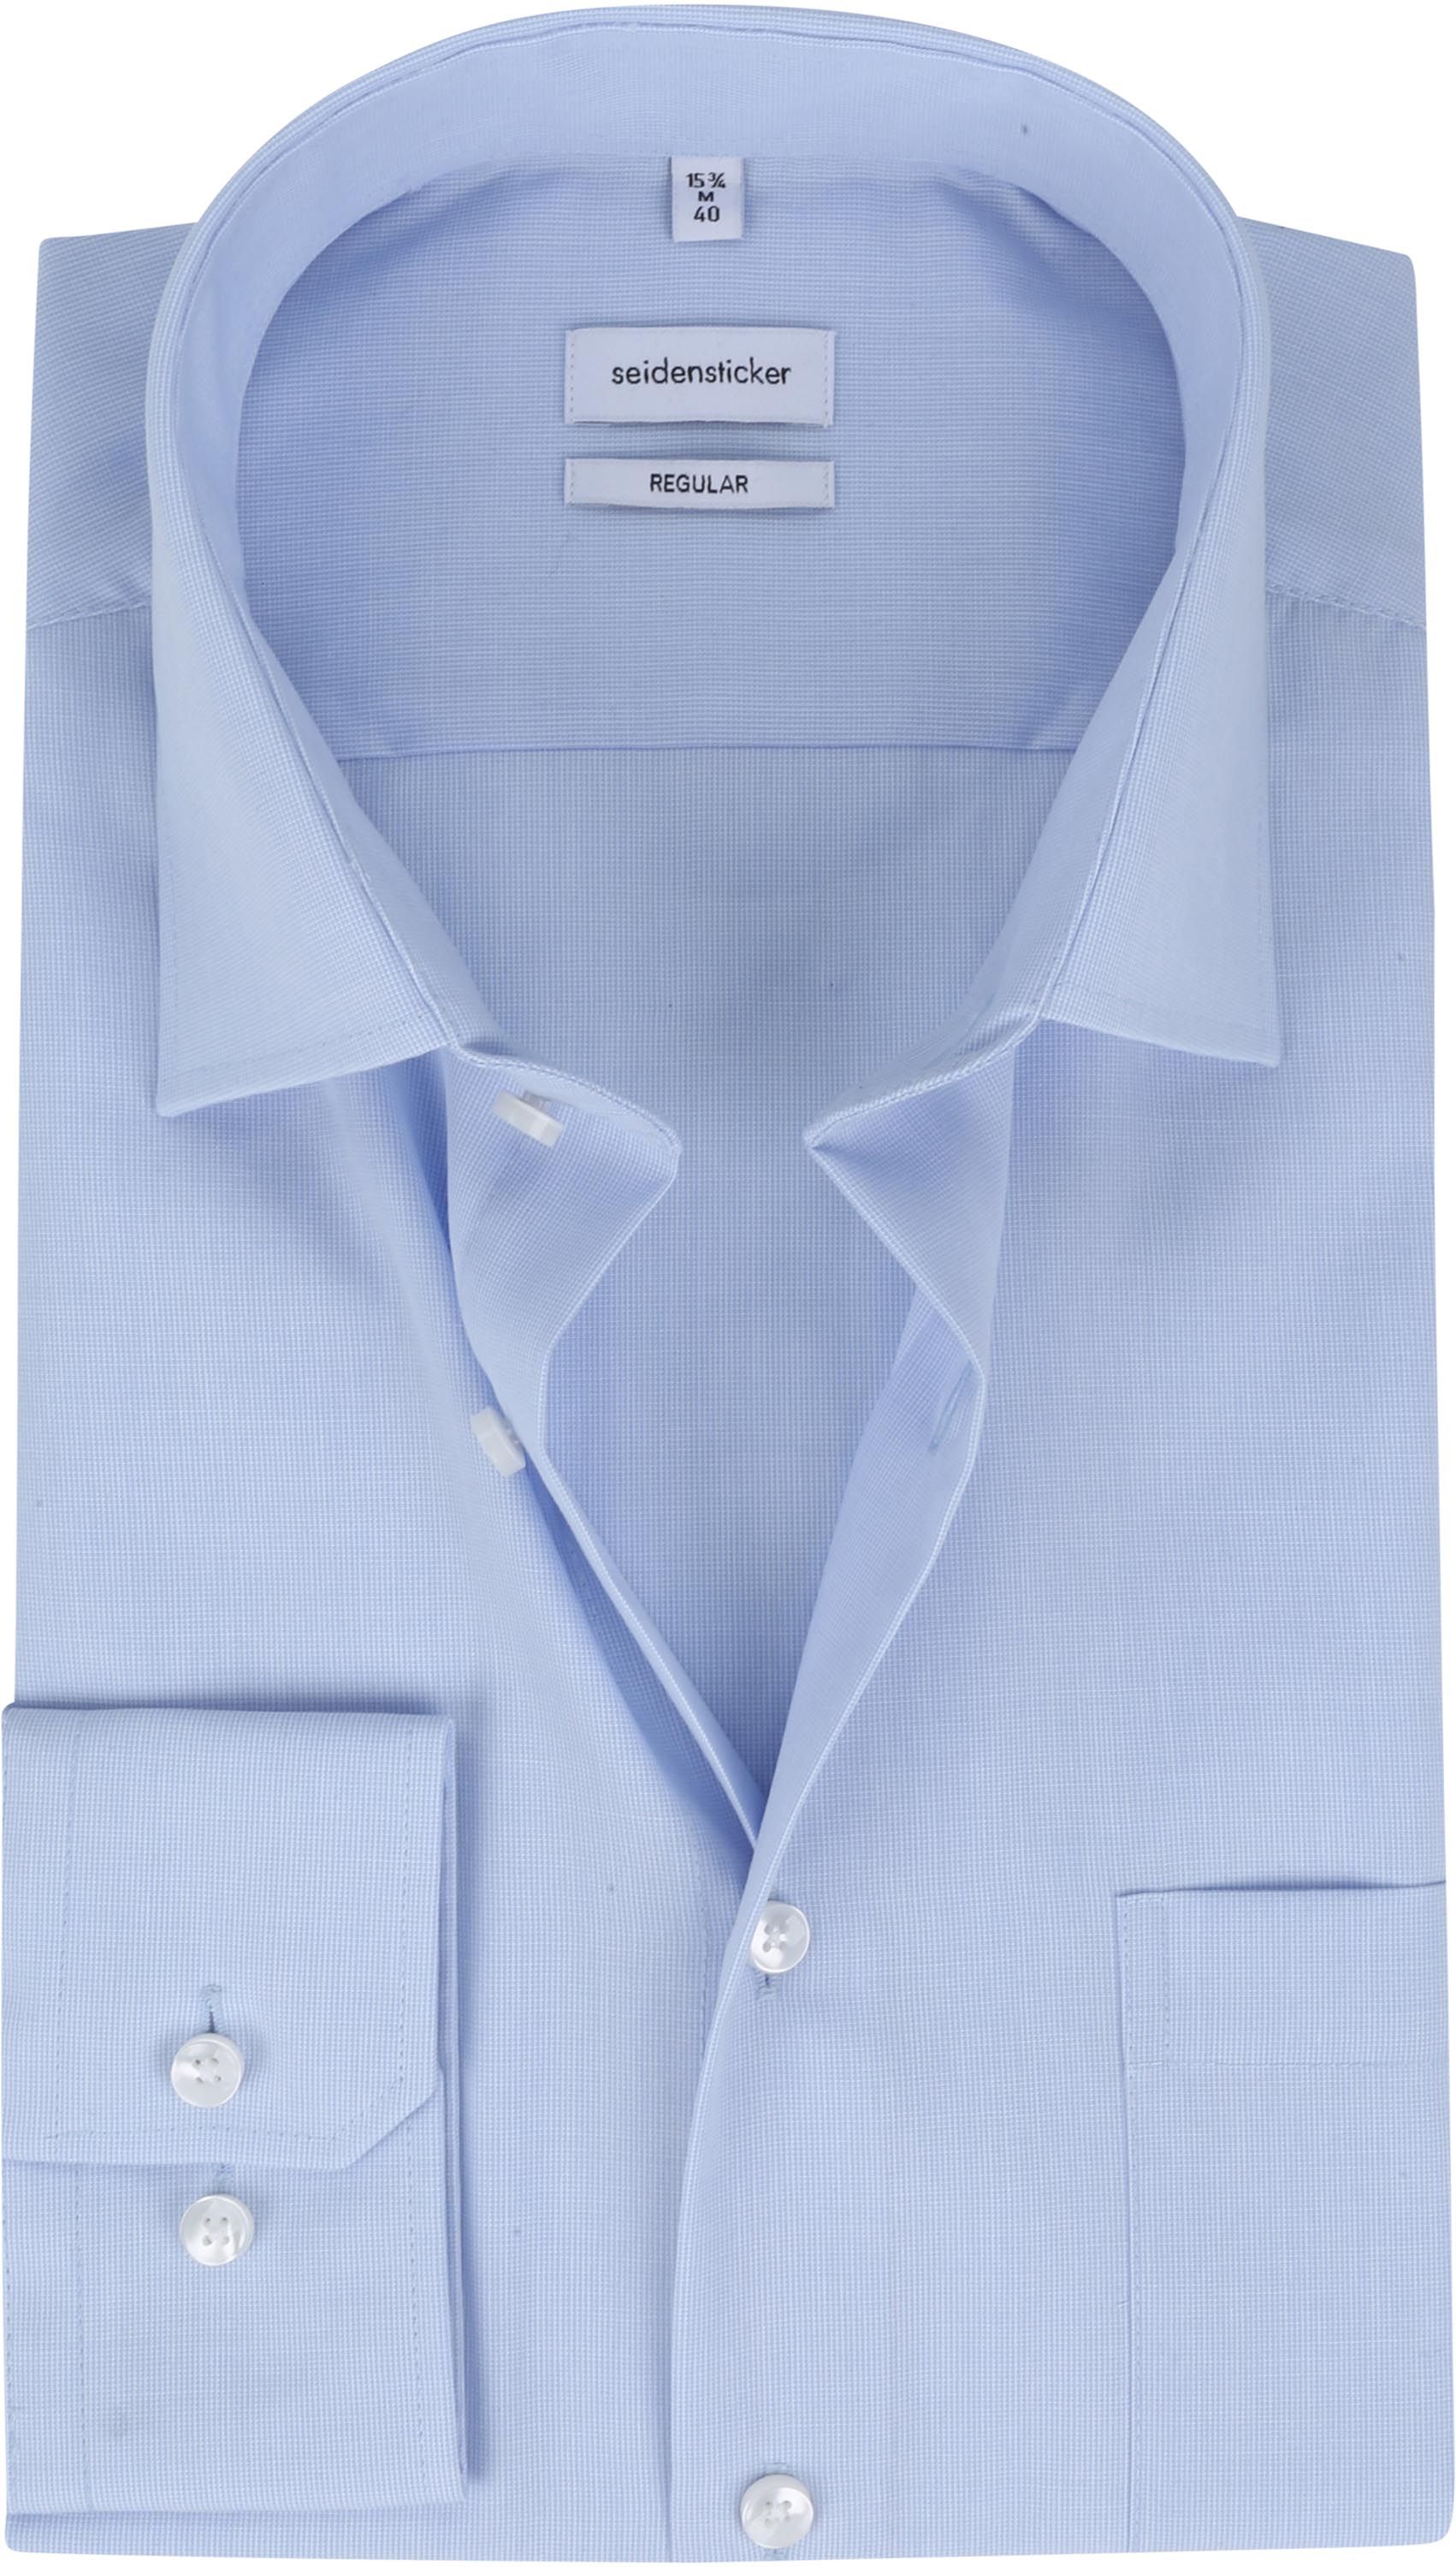 Seidensticker Non-Iron Shirt RF Light Blue size 15